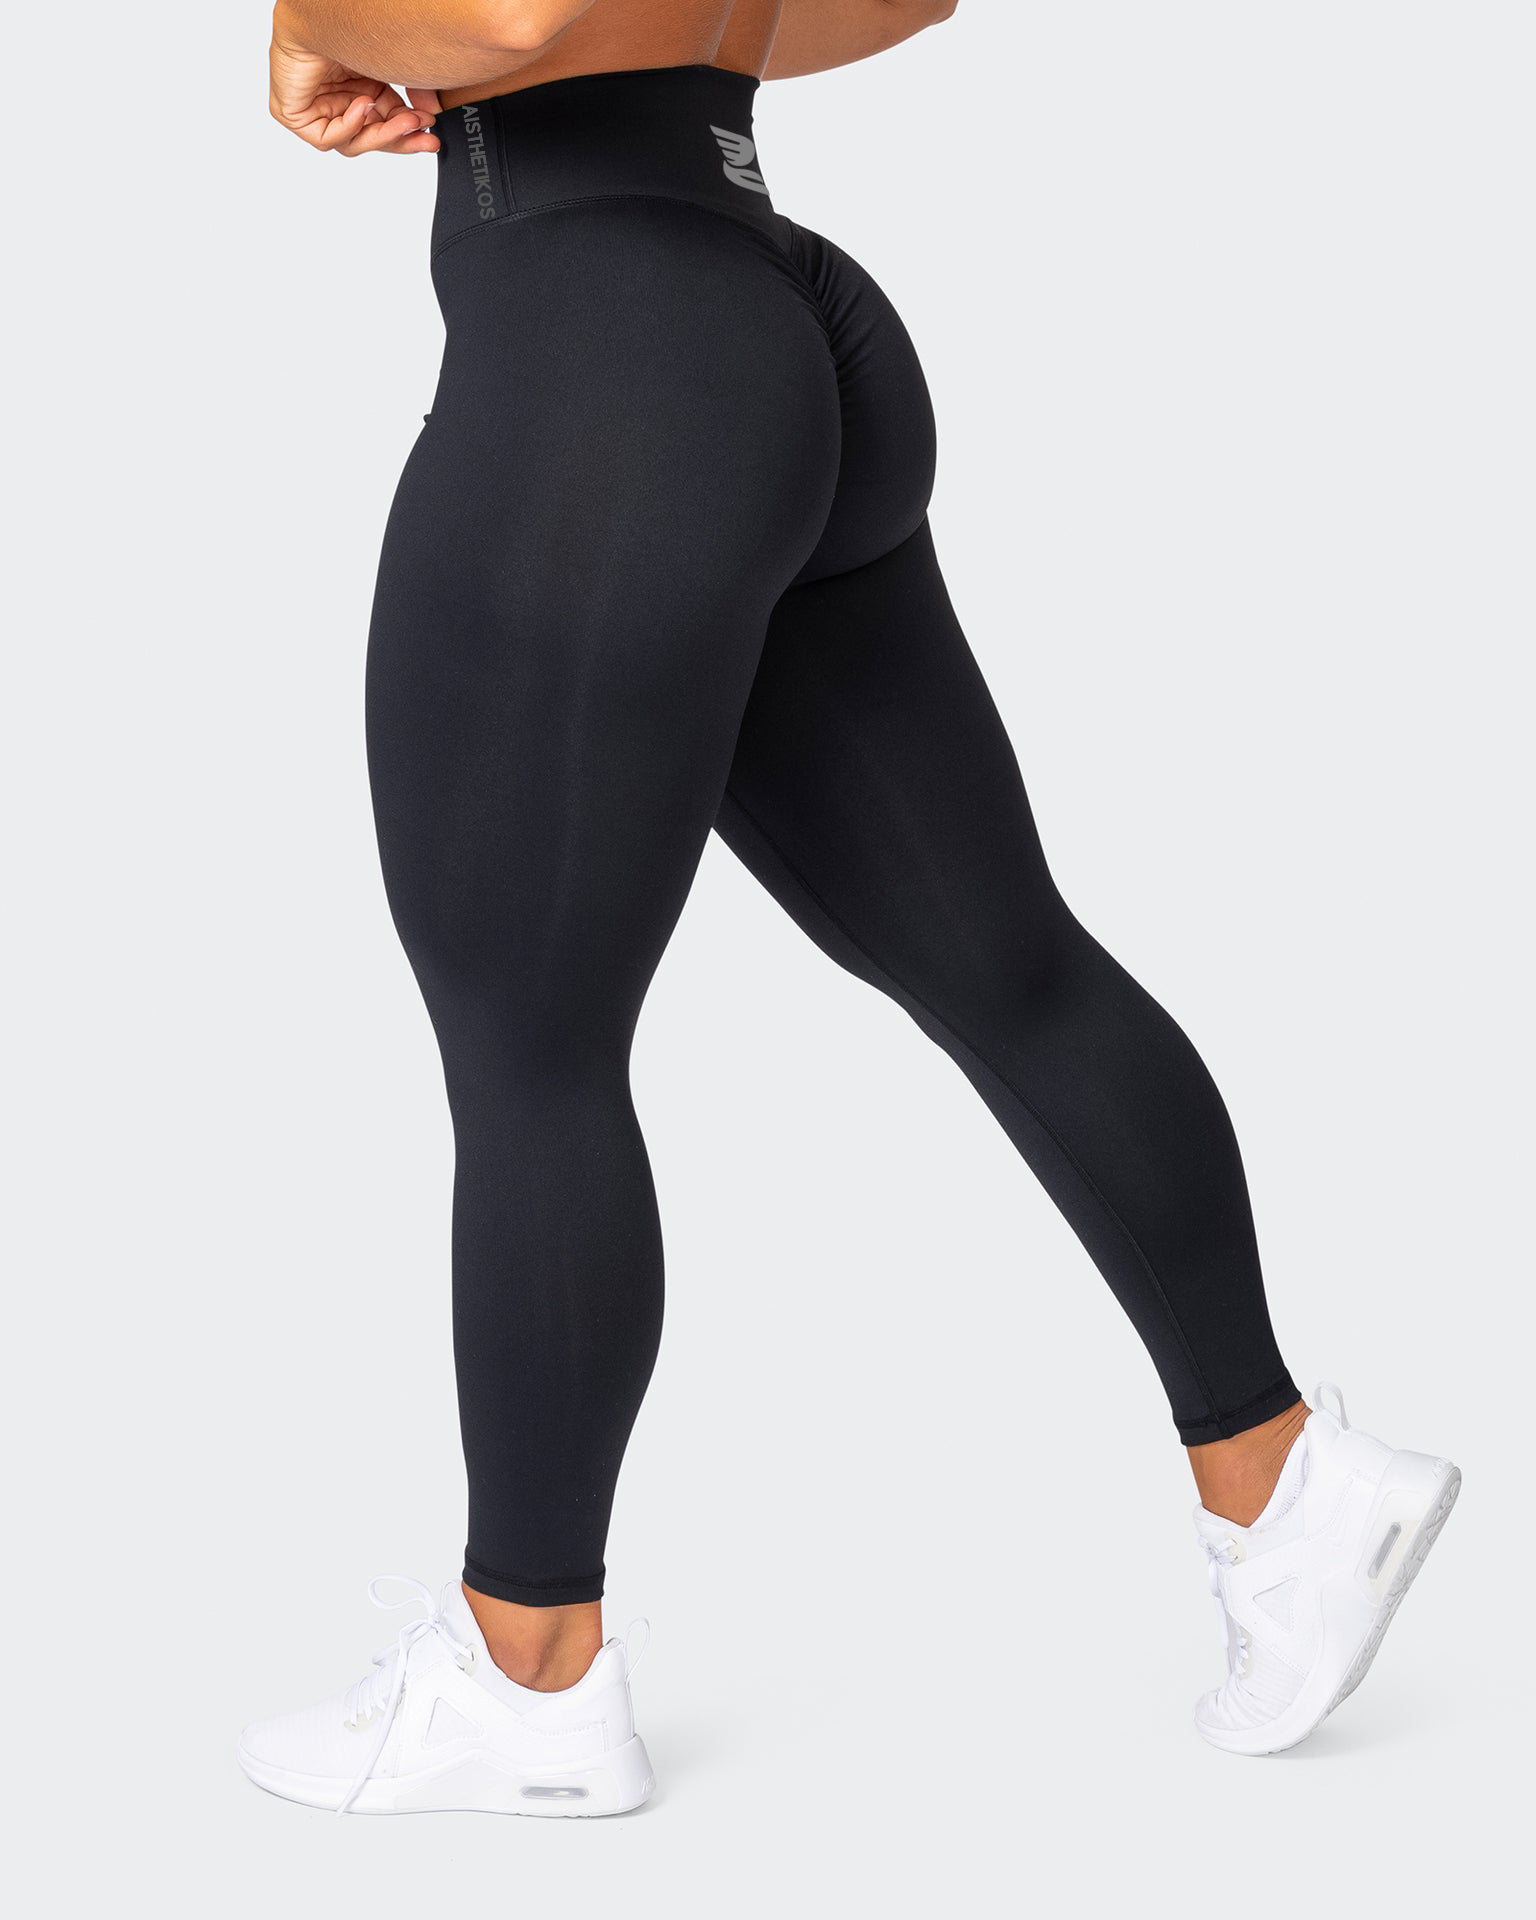 GetUSCart- SEASUM Women Scrunch Butt Leggings High Waisted Ruched Yoga  Pants Workout Butt Lifting M